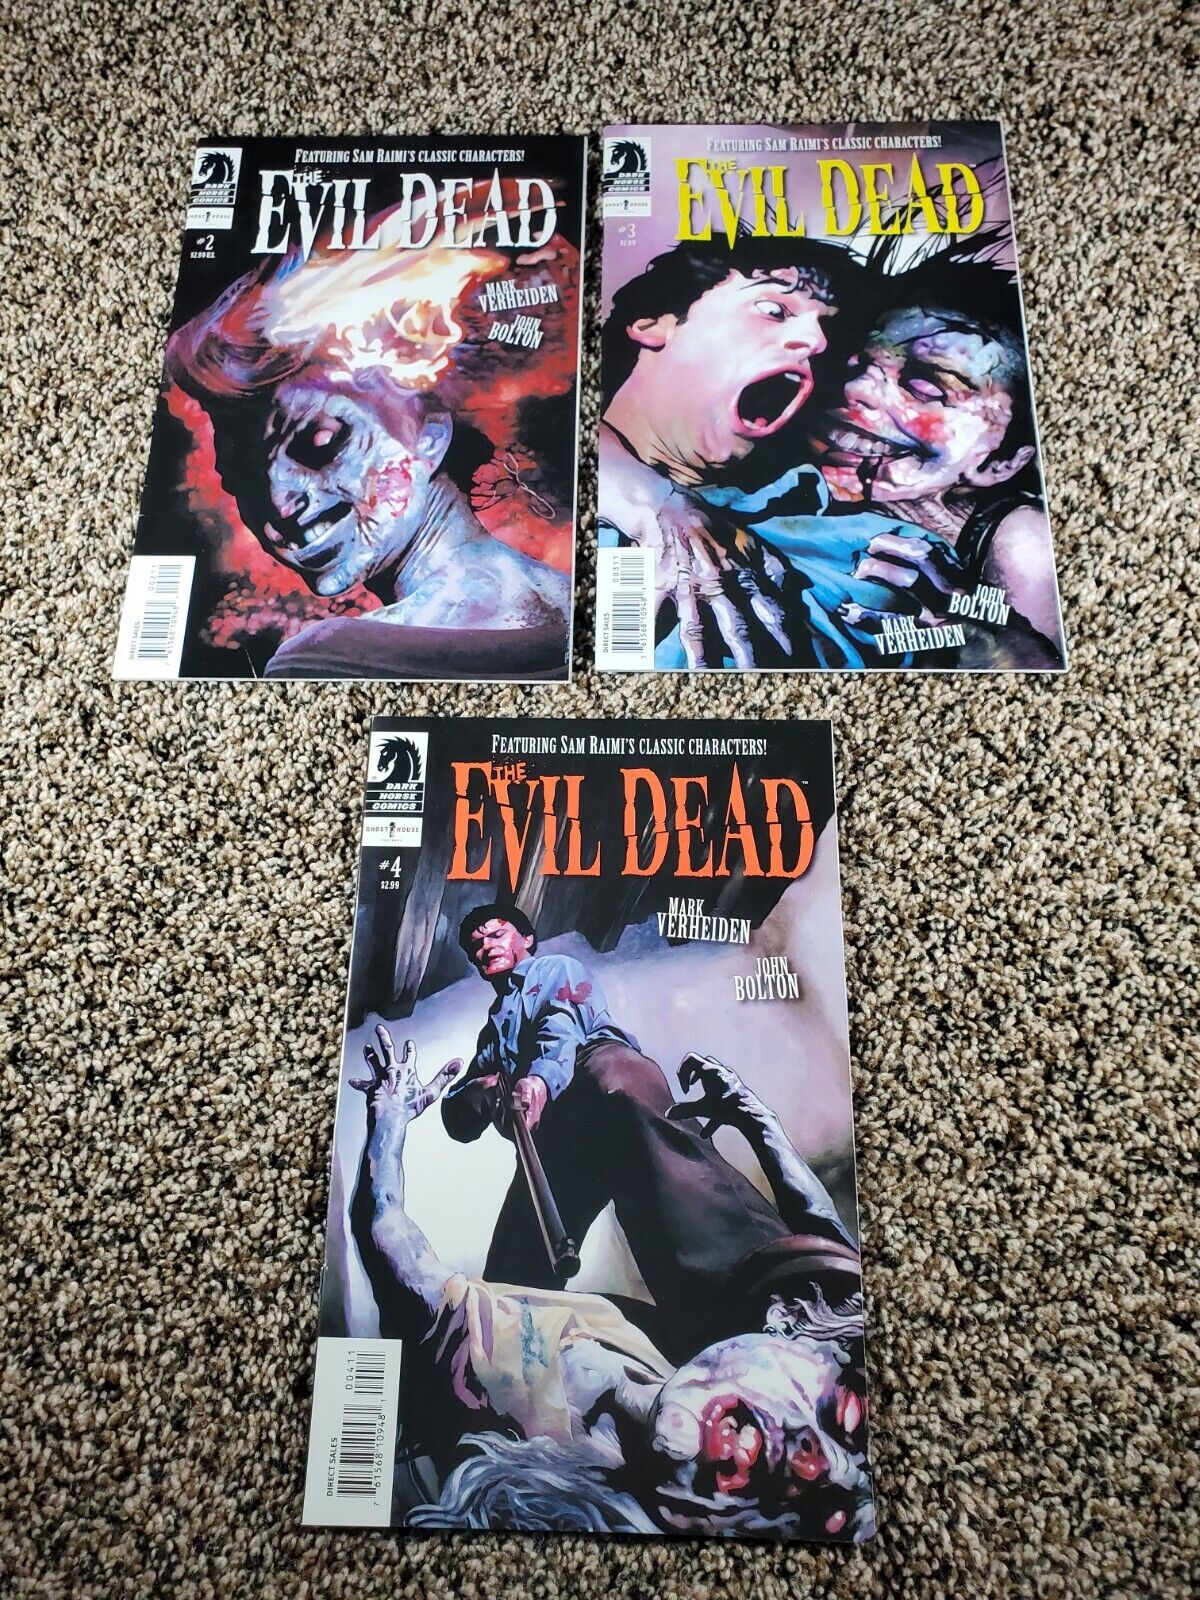 The Evil Dead #2 -4 Dark Horse comic, Sam Raimi, Mark Verheiden, Jogn Bolton